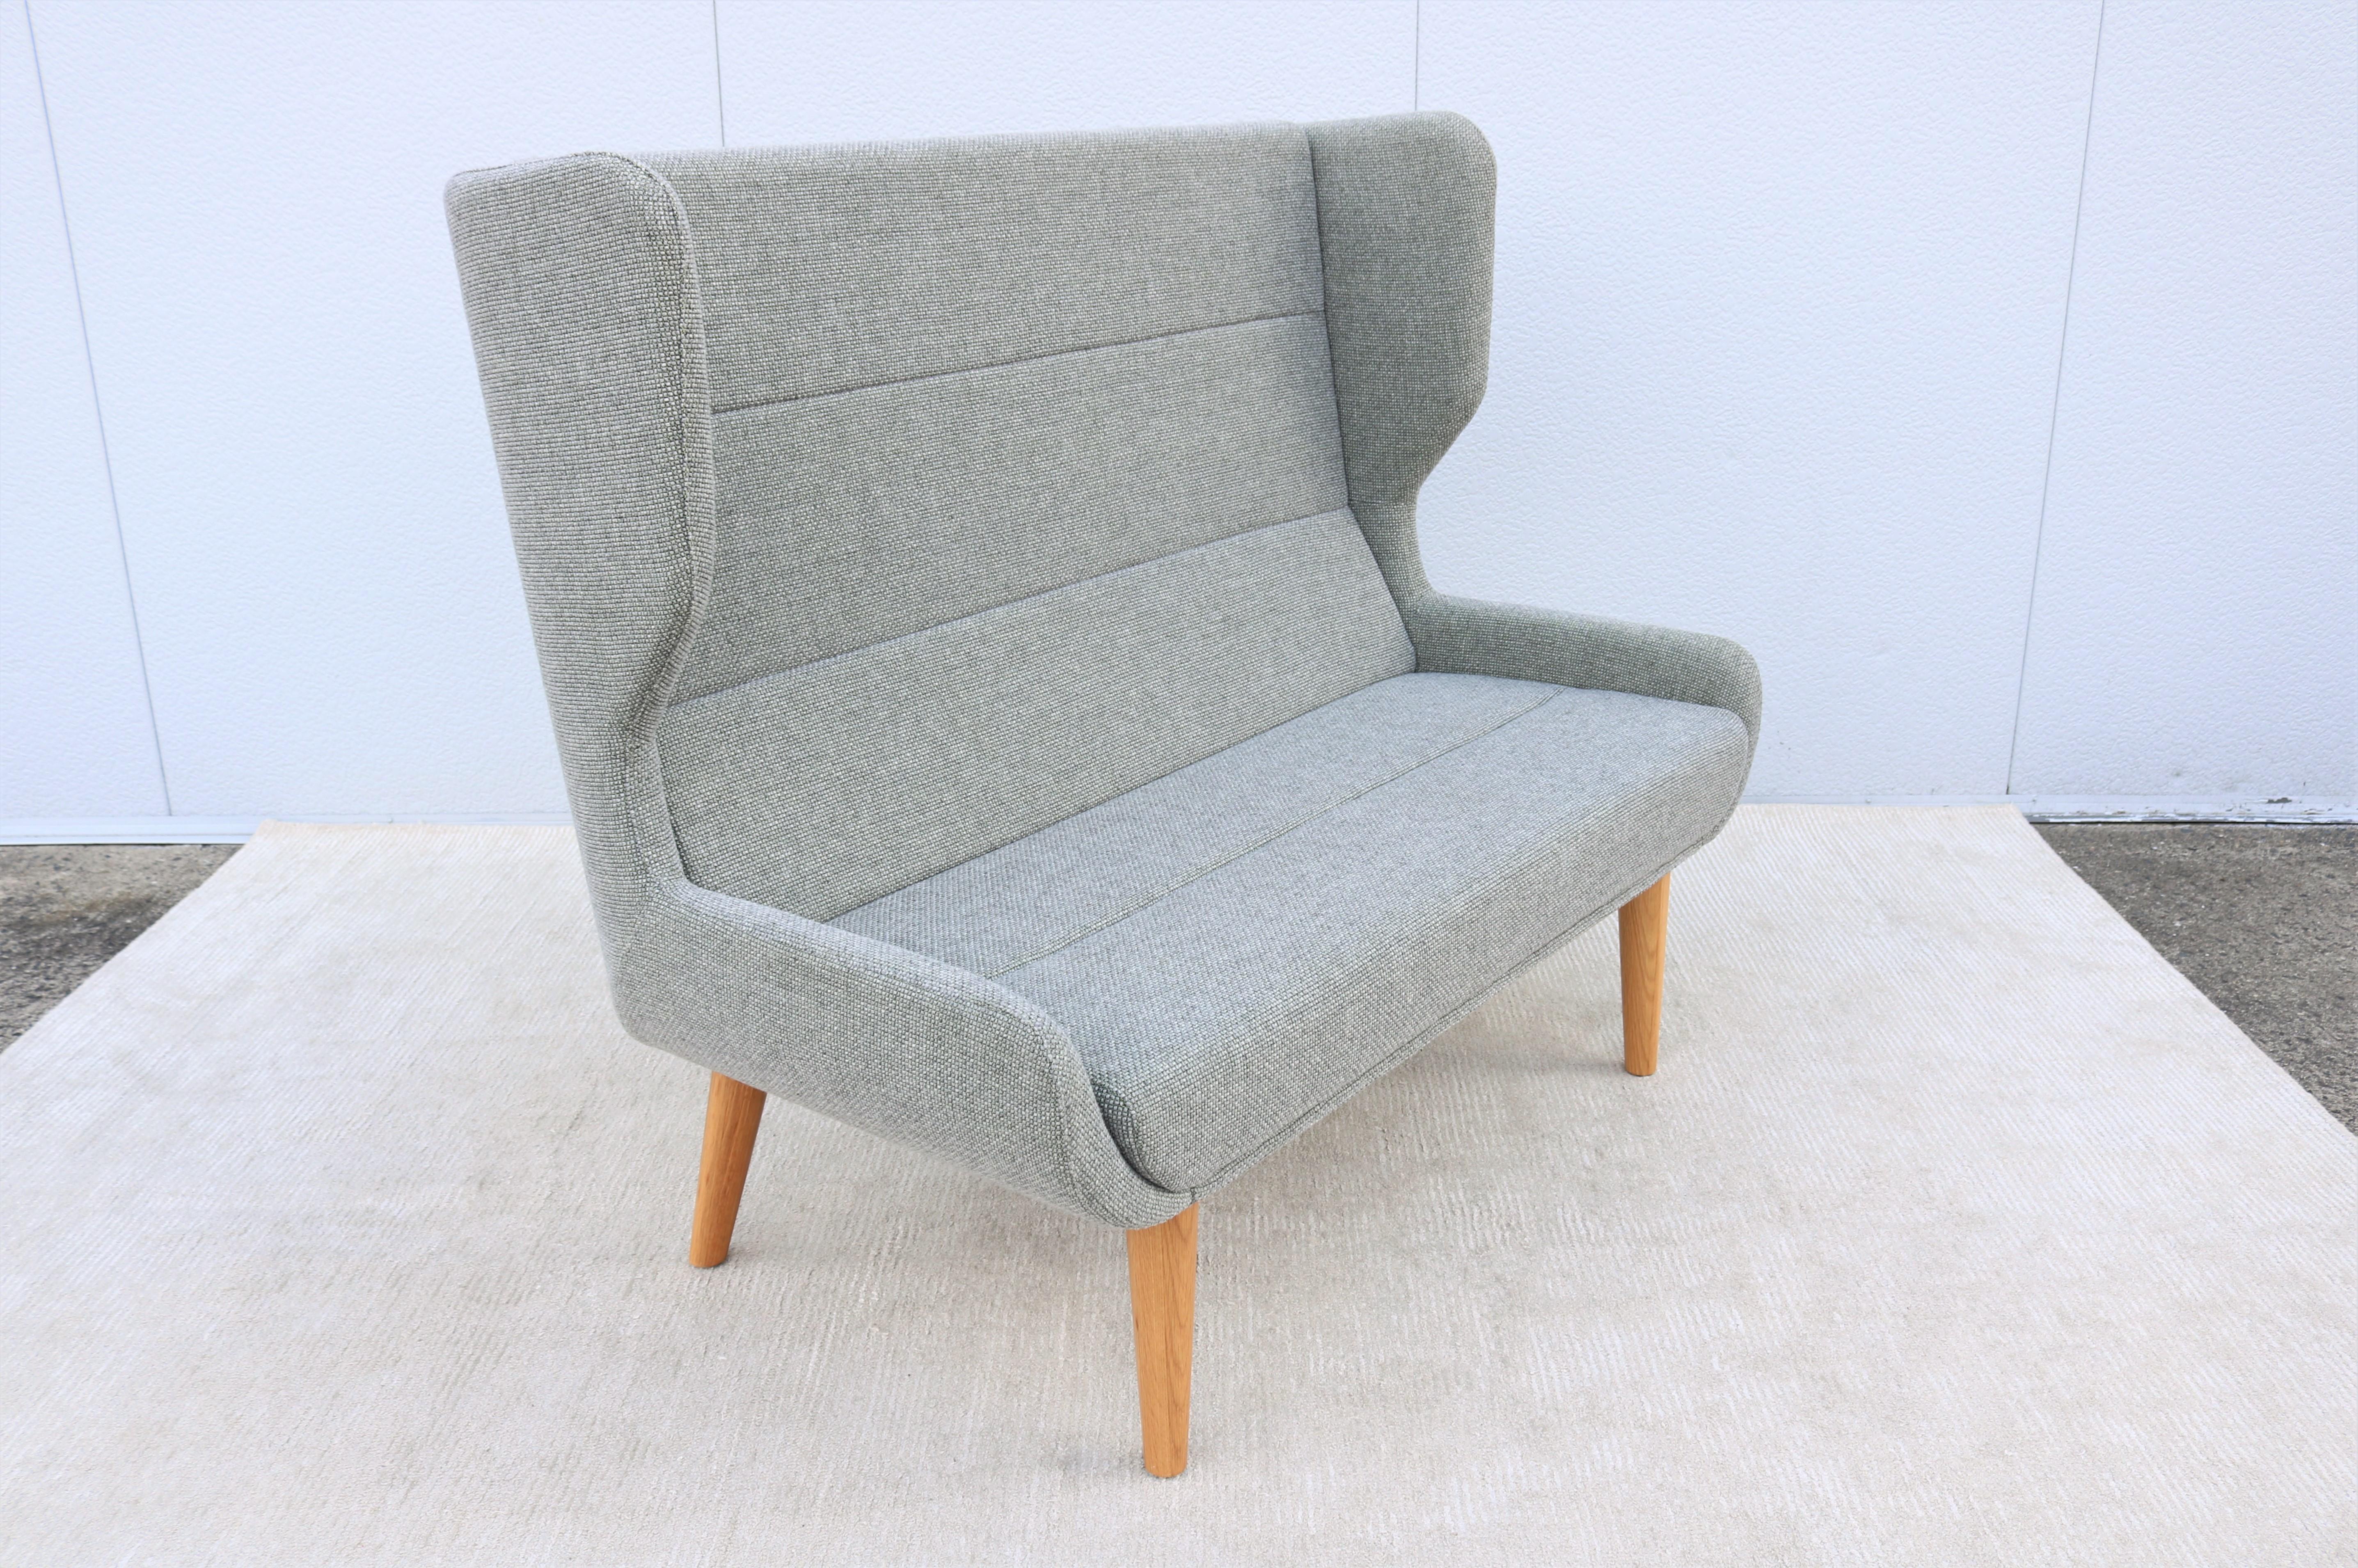 Dieses fabelhafte Zweisitzer-Sofa Hush mit hoher Rückenlehne ist vom Stil der klassischen Ohrensessel inspiriert.
Er ist bequem und stützend, hat aber eine aufrechte, positive Sitzposition. 
Das schlichte und elegante Design passt zu jeder modernen,